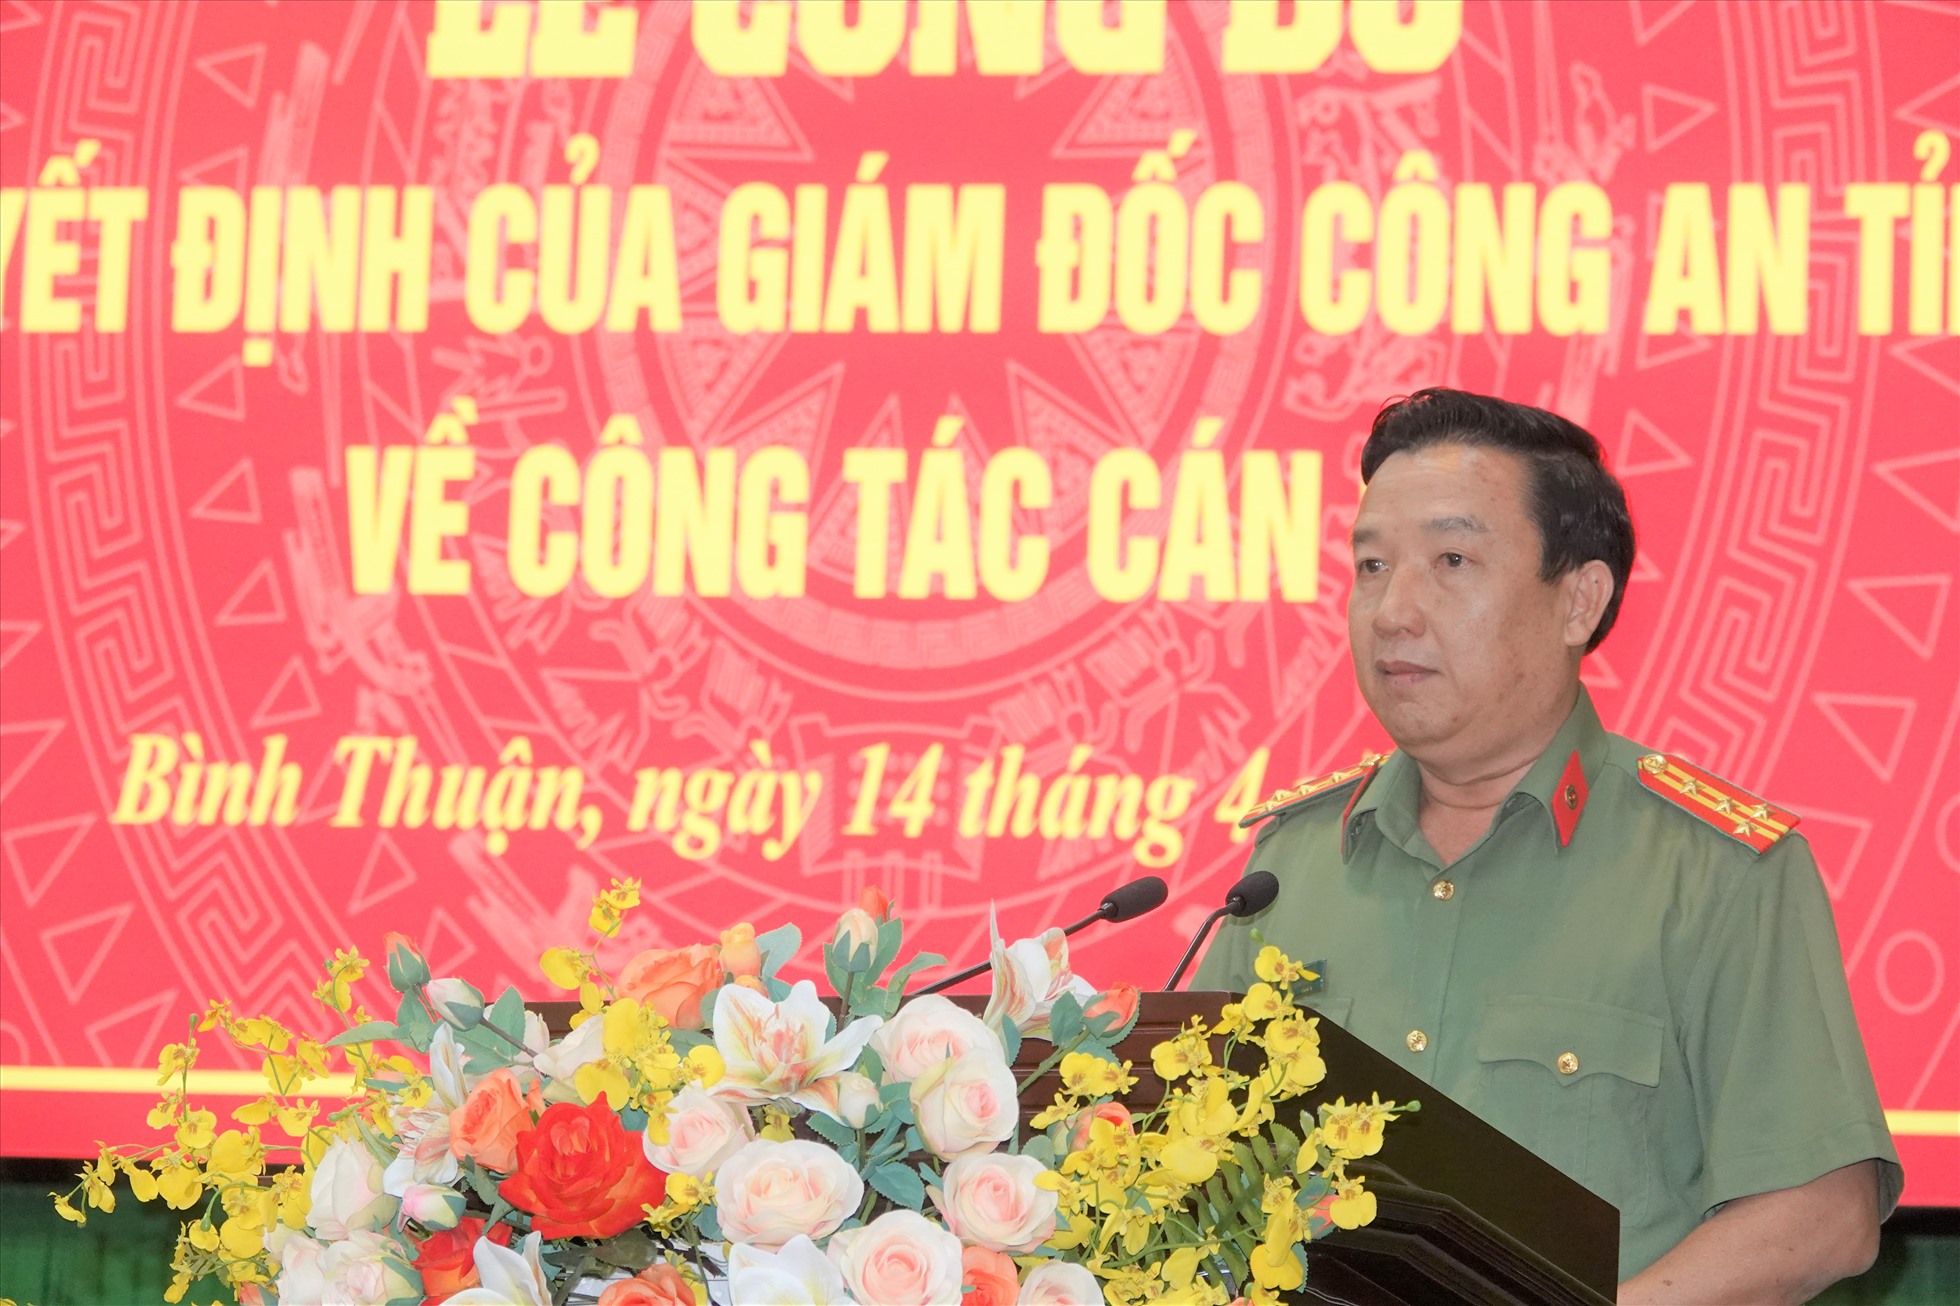 Đại tá Trần Văn Mười – Phó Bí thư Đảng ủy, Phó Giám đốc Công an tỉnh Bình Thuận phát biểu tại buổi lễ. Ảnh: Như Ý